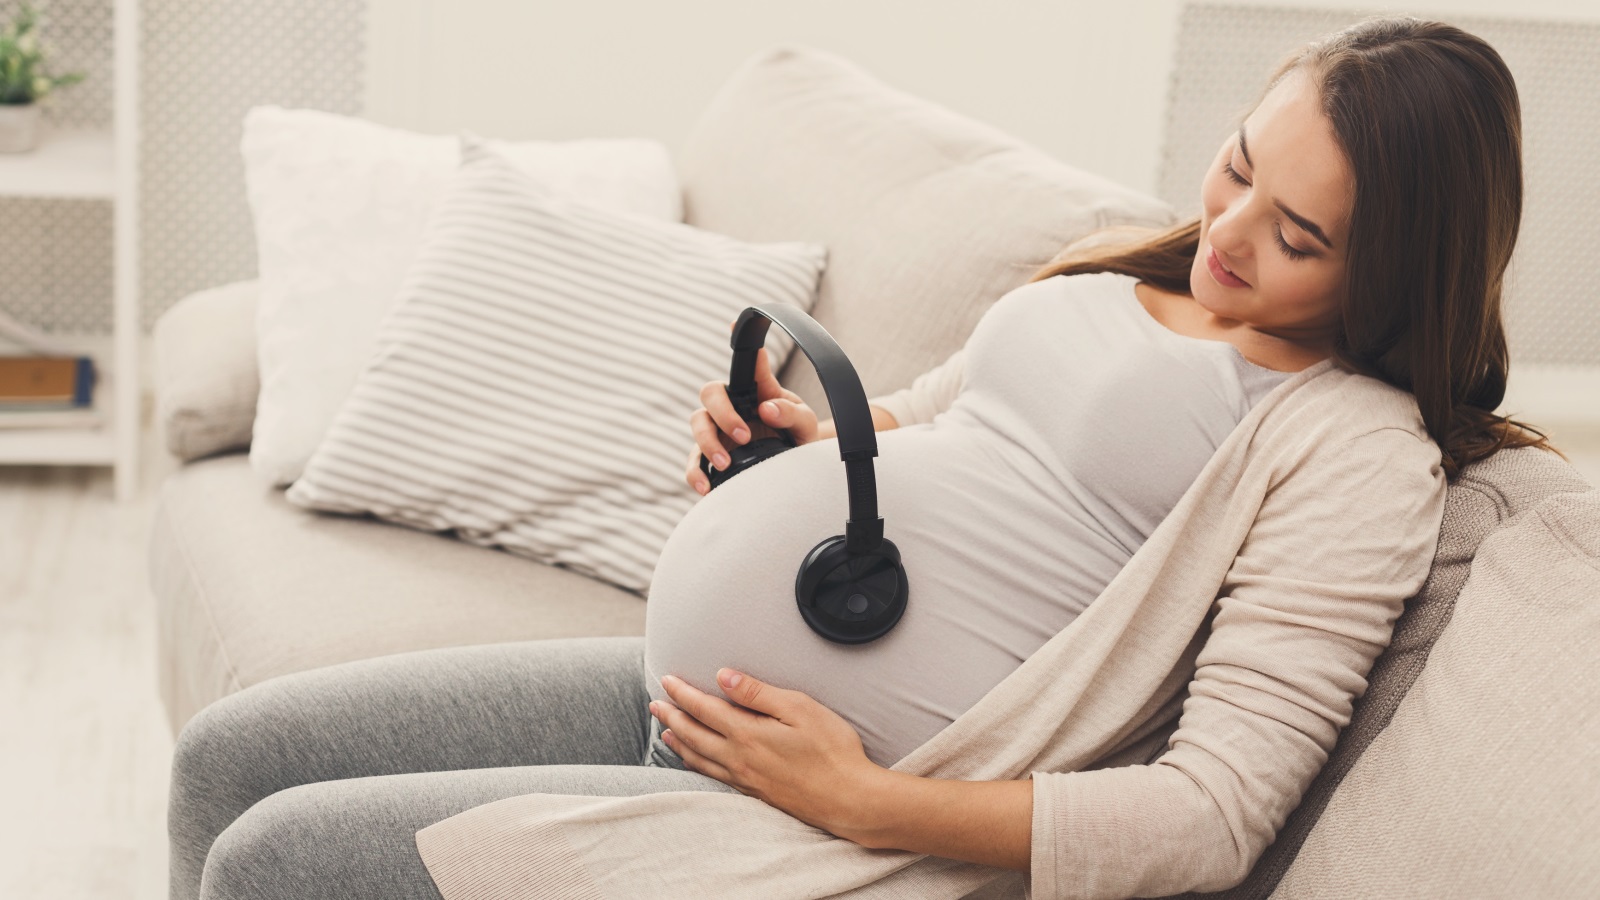  فرنسا تبدأ في تسليم الحوافز المالية للعائلات بداية من الشهر السابع لحمل الأم للتشجيع على الإنجاب (مواقع التواصل)